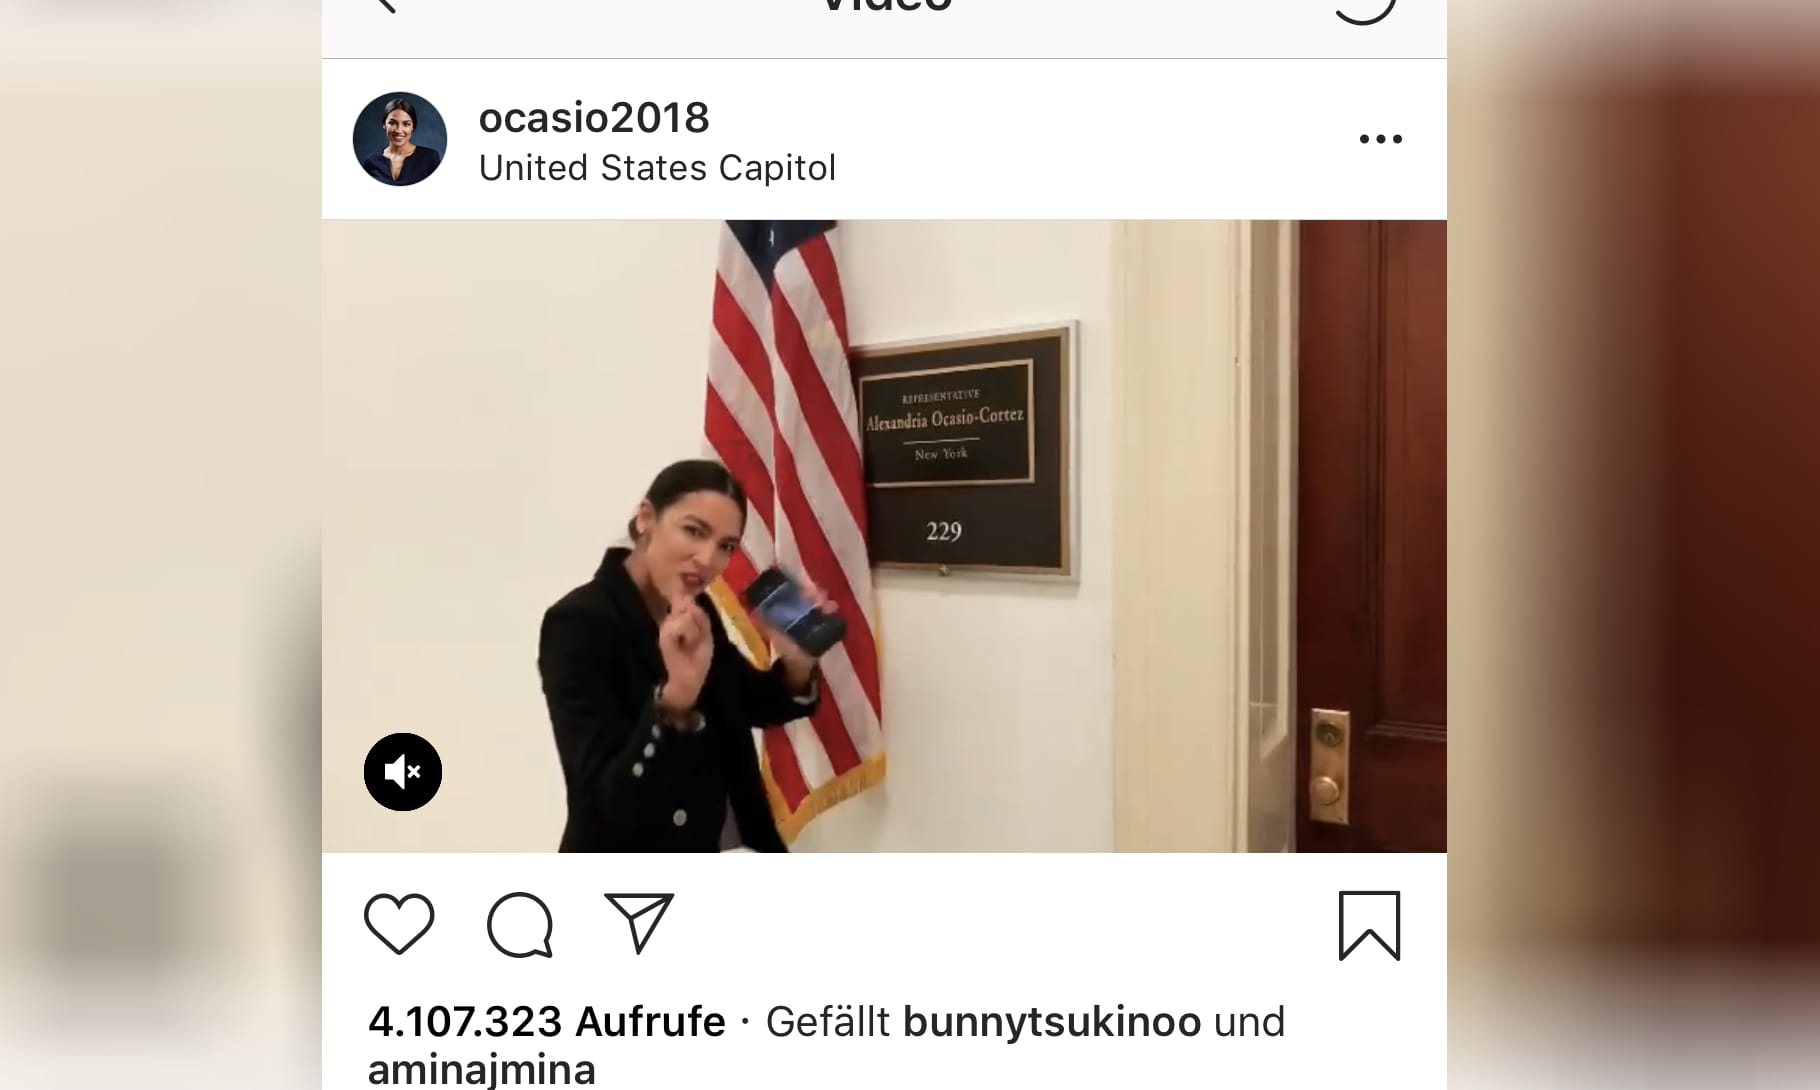 Über zwei Millionen Follower. US-Poltikerin Alexandria Ocasio-Cortez macht vieles richtig, findet Fuchs. Die Amerikanerin gibt sich auf Instagram nahbar und authentisch – und macht Späße vor der Kamera. Die Nutzer finden es toll.